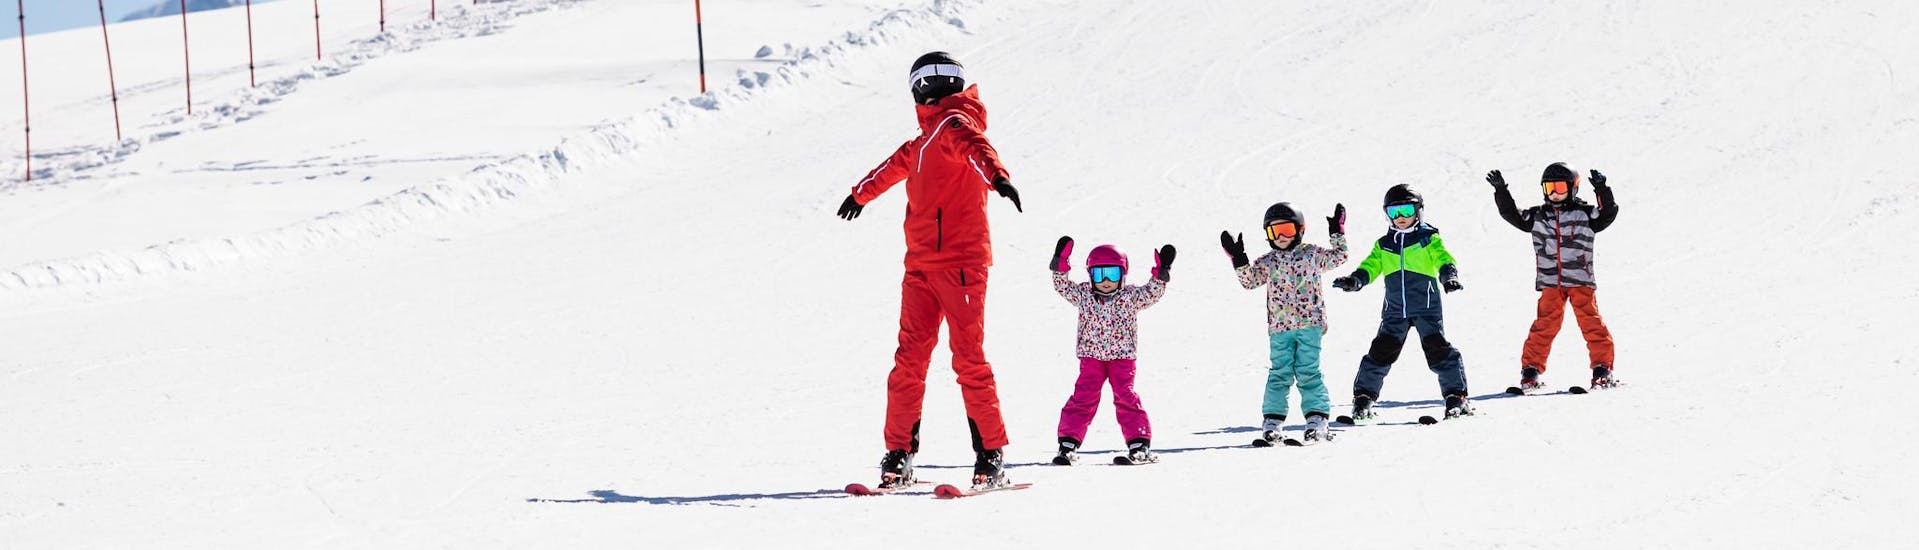 Moniteur de ski et enfants profitent d'une leçon de ski dans une école de ski près de Udine.